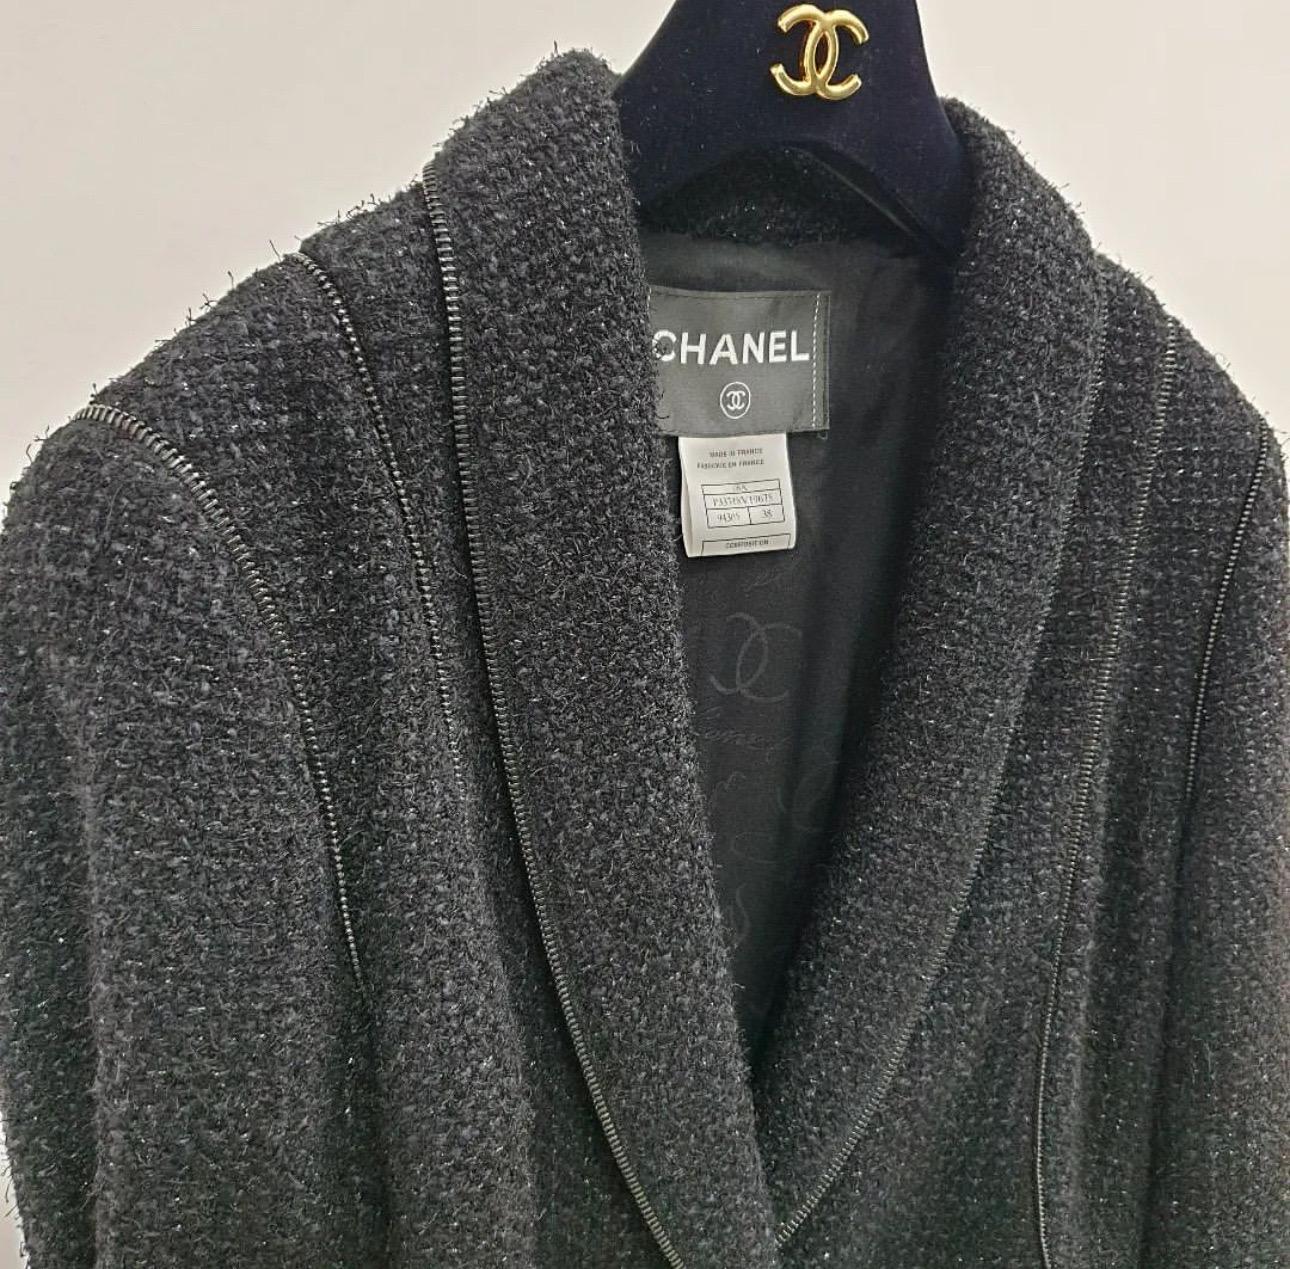 Atemberaubende schwarze Chanel Lesage Tweed Jacke mit CC Jewel Gripoux Knöpfen aus der Paris / LONDON Collection, Metiers d'Art
sz.38
Ausgezeichneter Zustand.